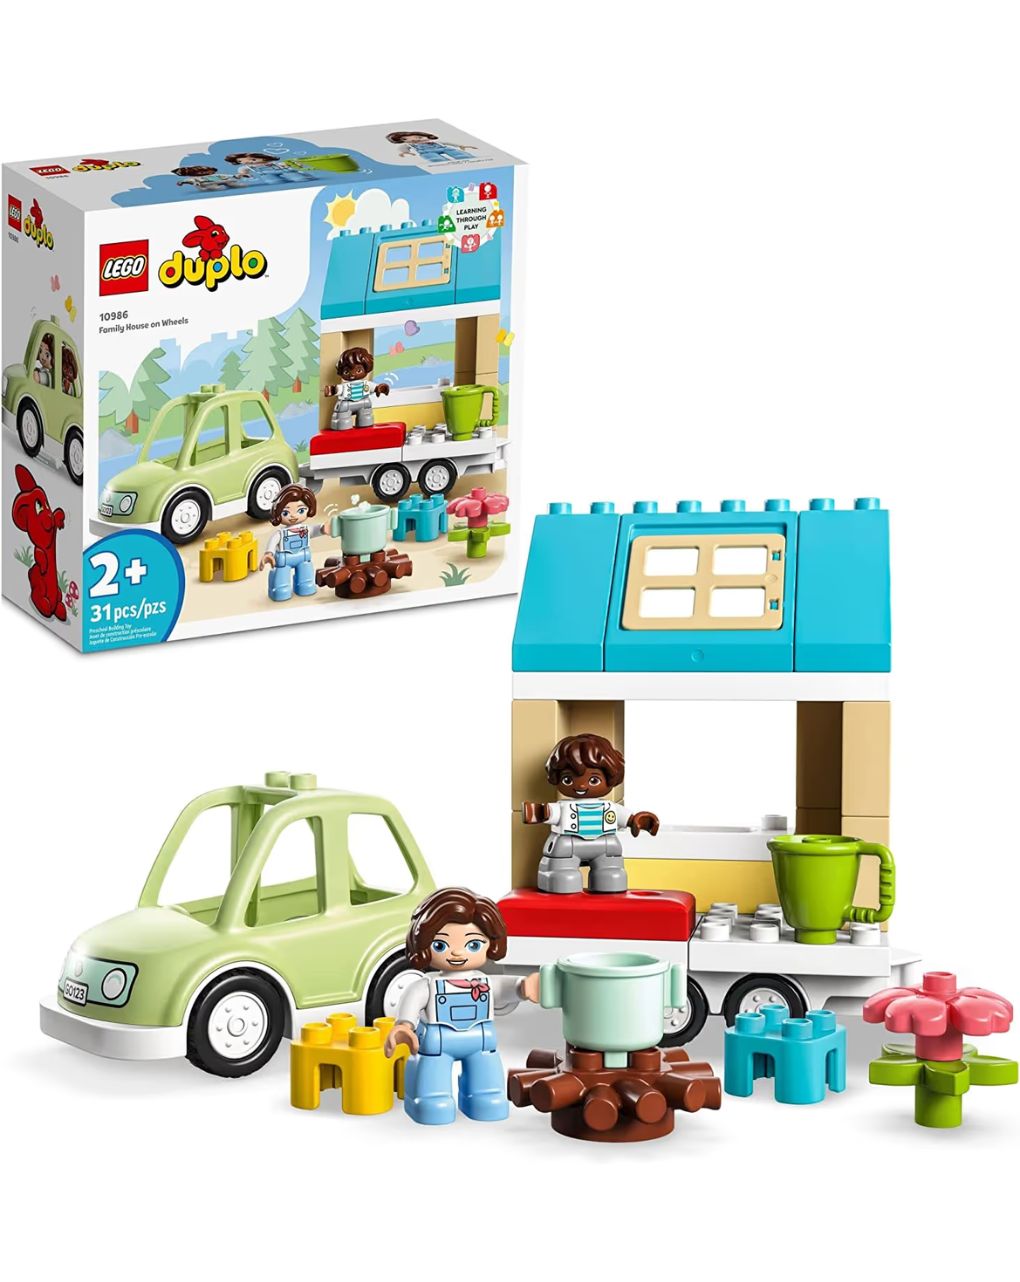 Lego duplo town family house on wheels 10986